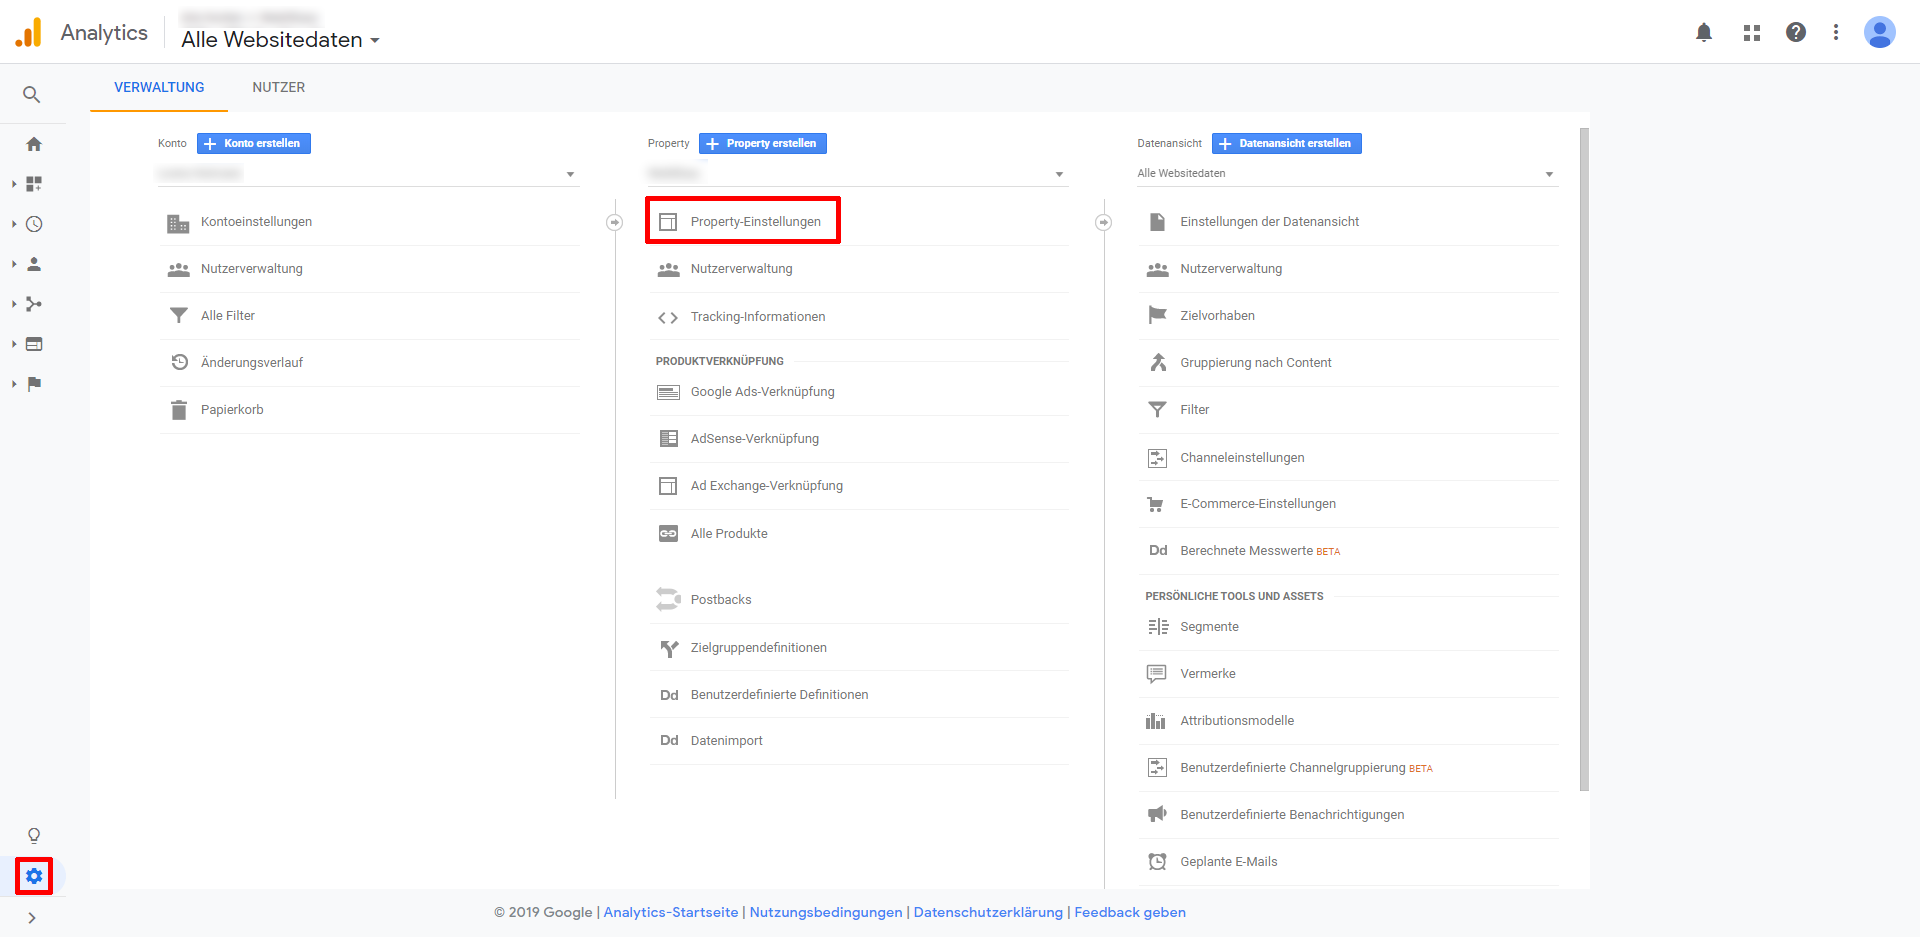 Google Analytics settings